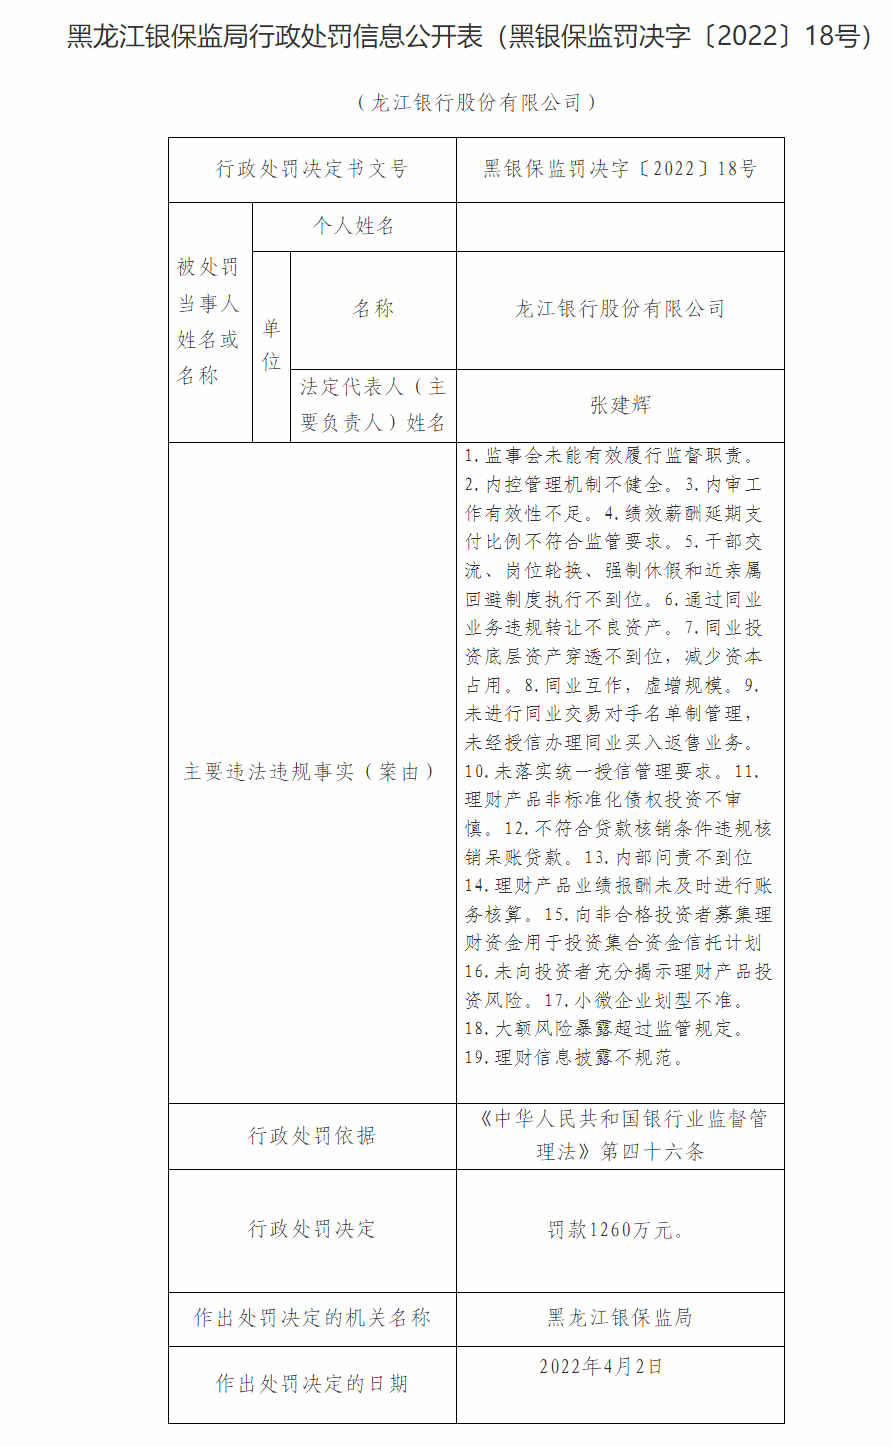 “龙江银行及旗下9家分支行因内控管理机制不健全等合计被罚1730万元